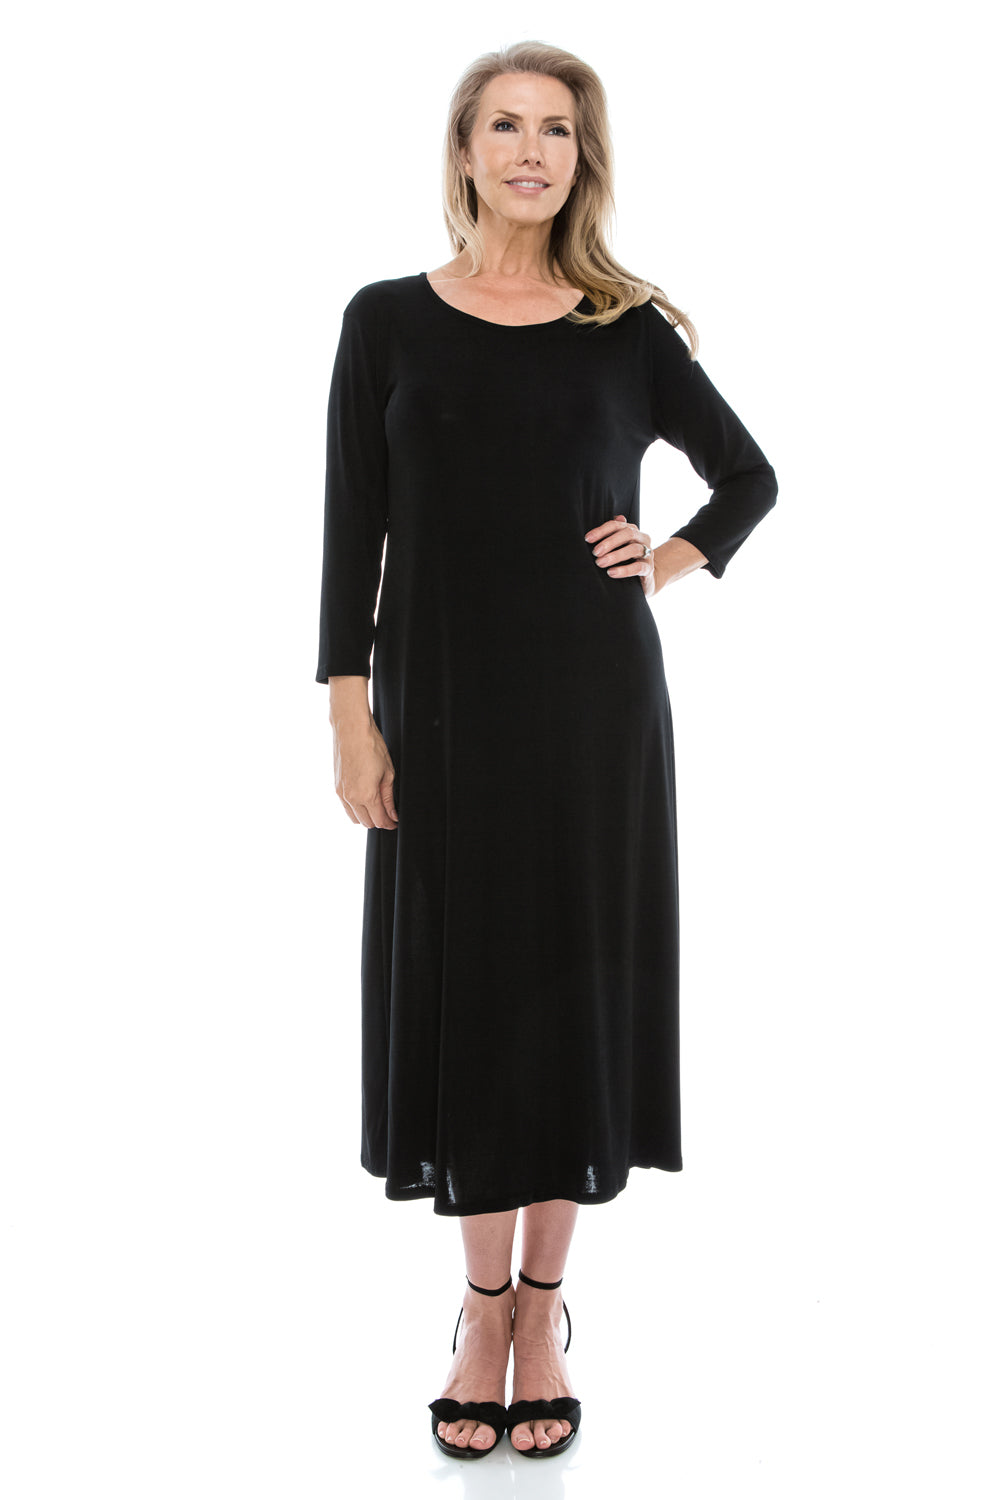 Jostar Women's Stretchy Long Dress QS, 702BN-Q - Jostar Online